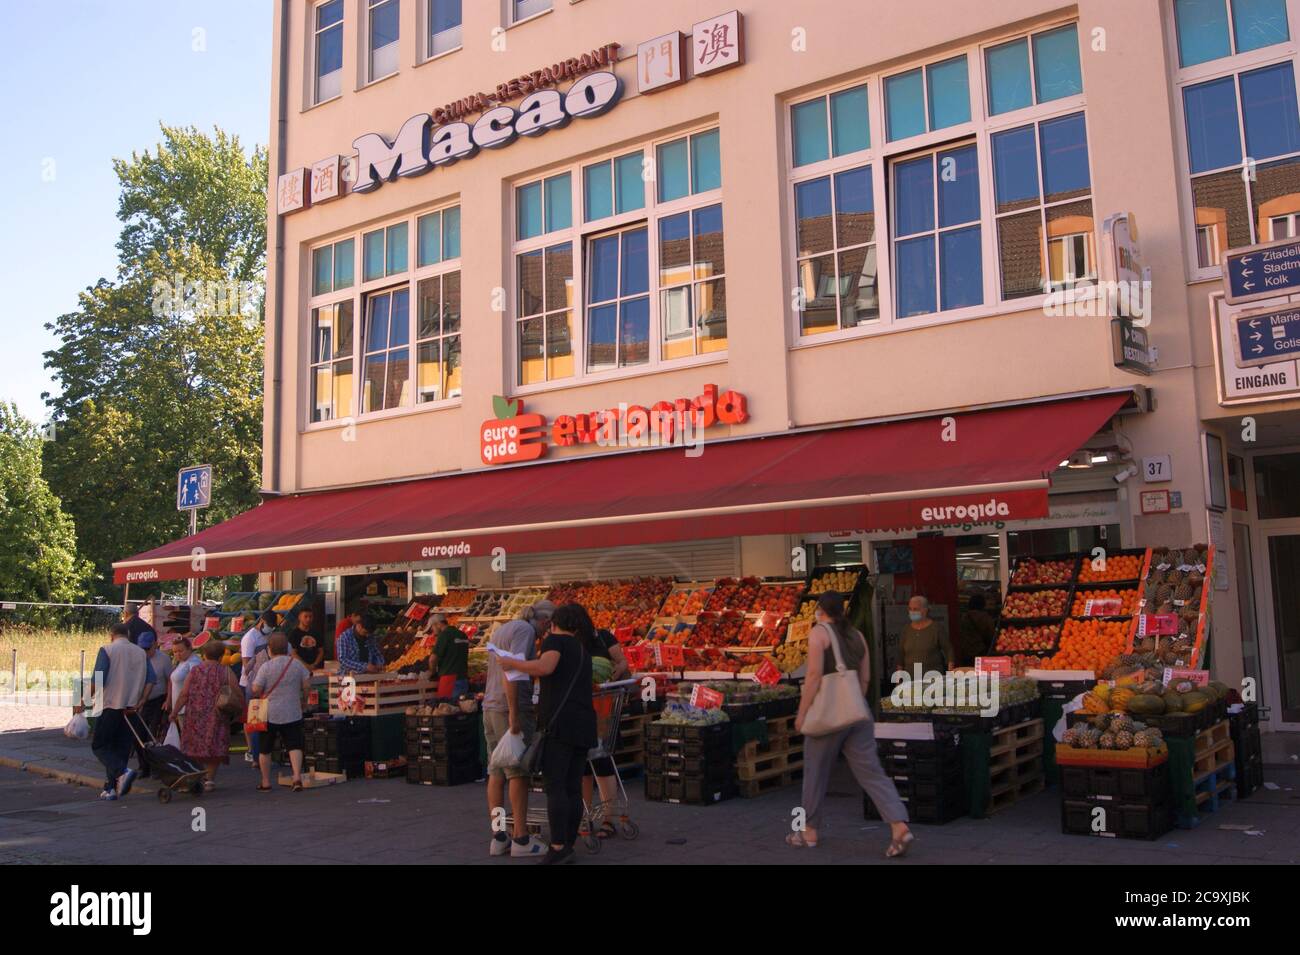 Supermarktkette eurogida, die überwiegend türkische Spezialitäten im Sortiment führt. Stock Photo